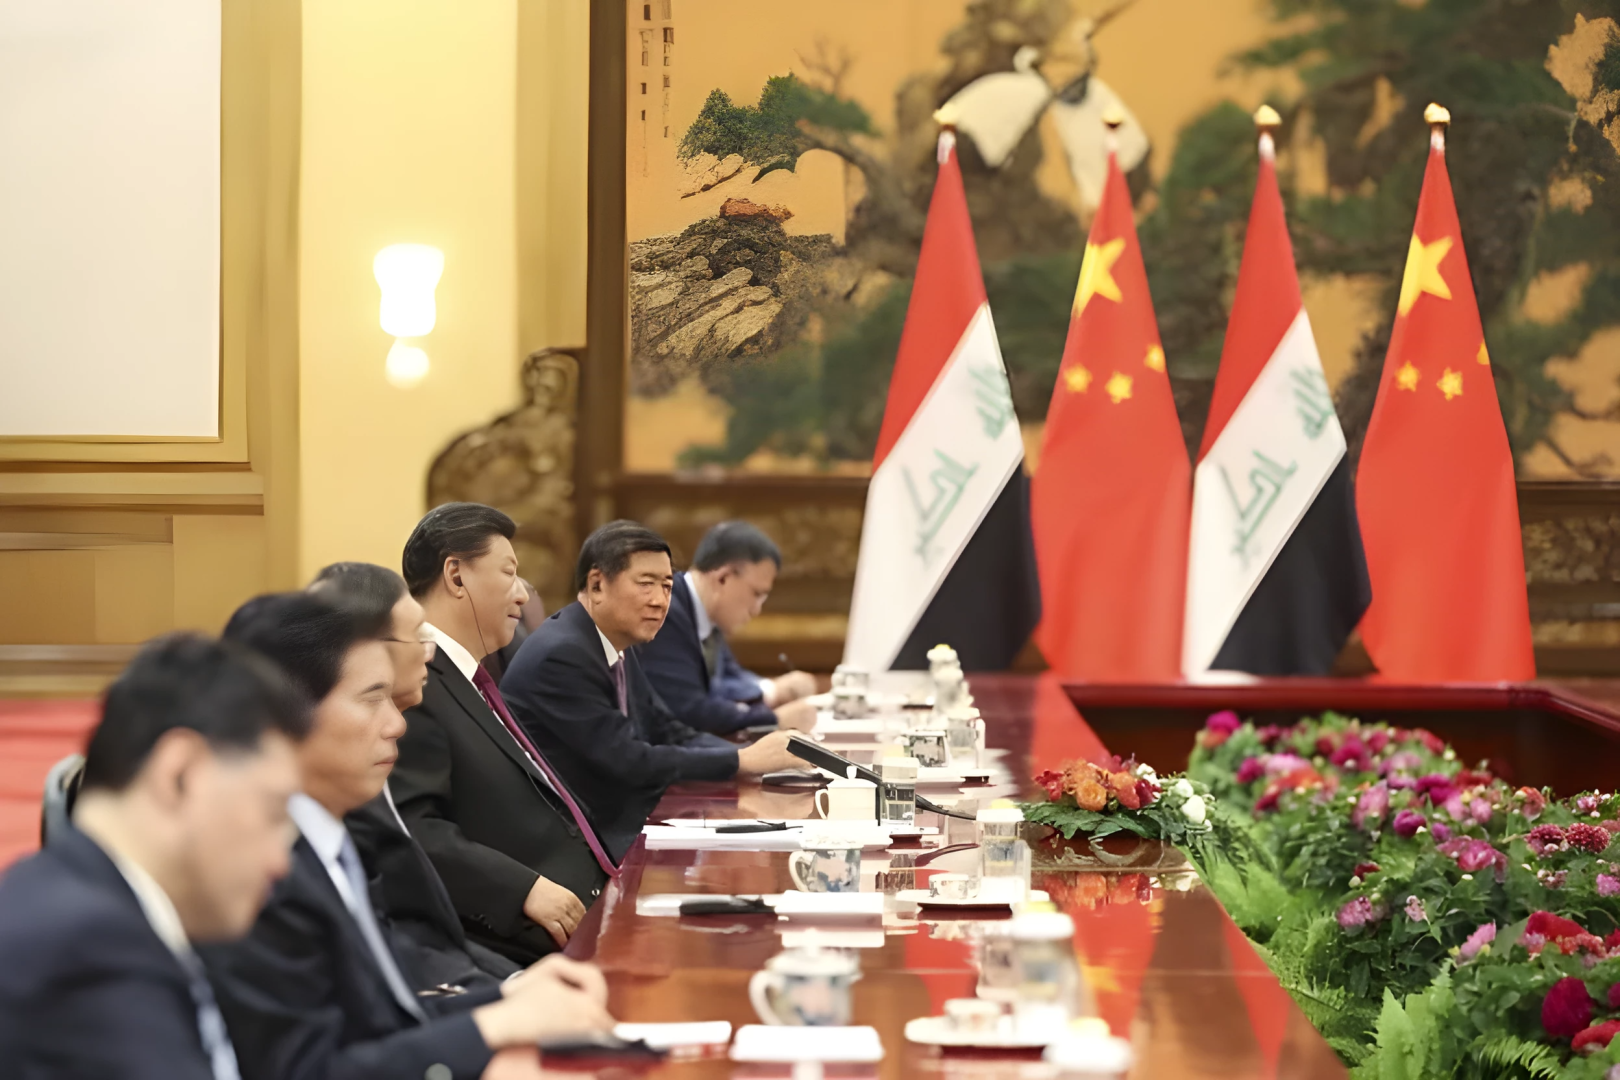 هل يزور السوداني بكين؟ لغز دبلوماسي يثير الشكوك